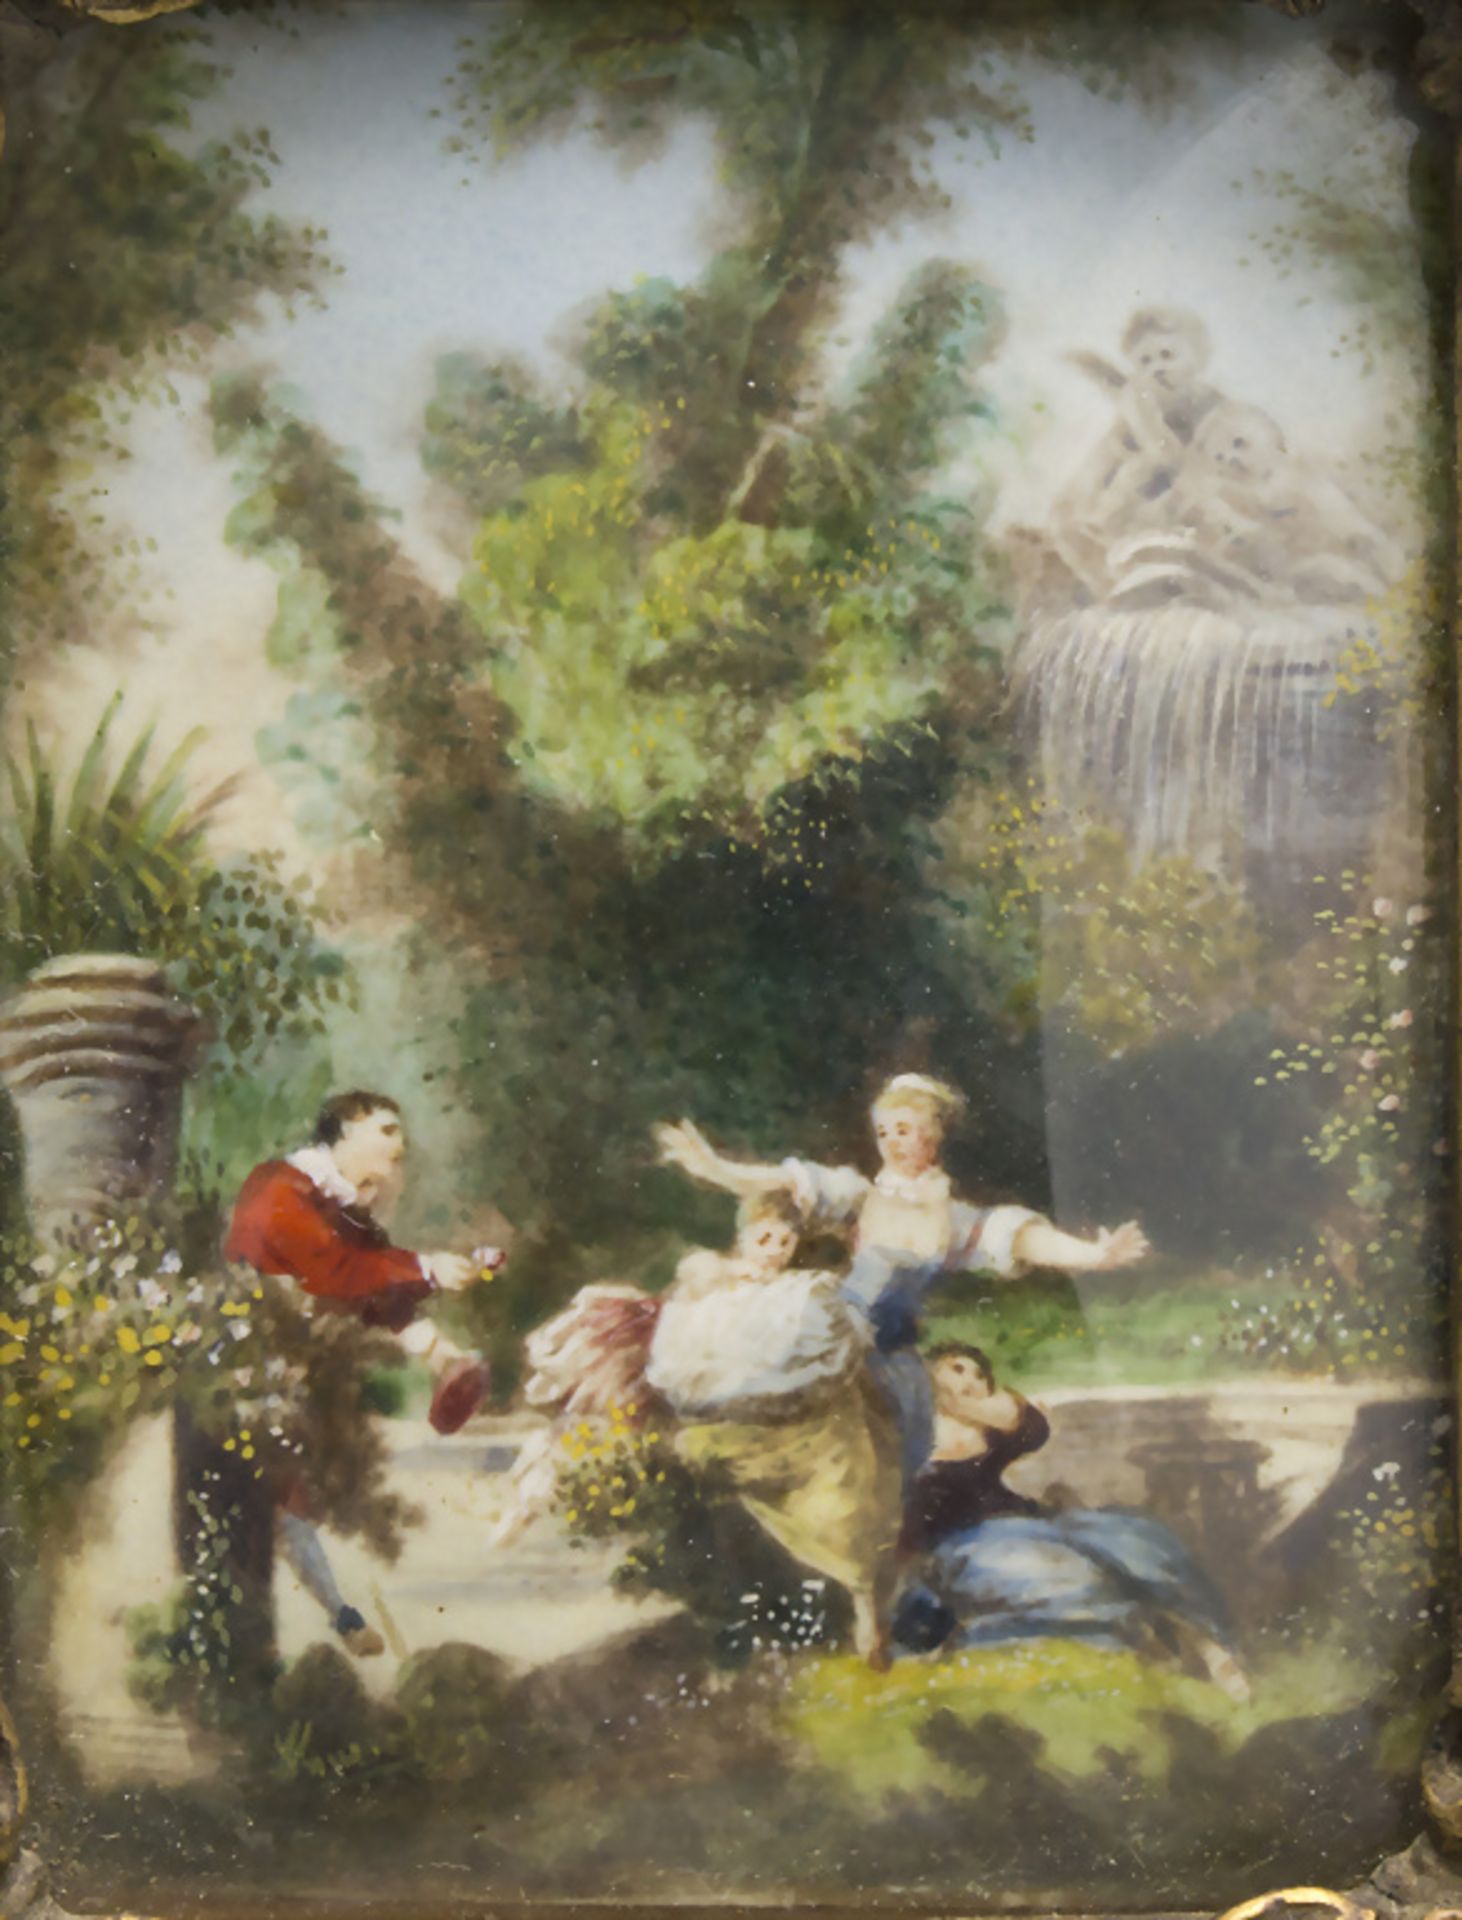 Miniatur 'Fête' / A miniature of a garden party scene, wohl Frankreich, 19. Jh.